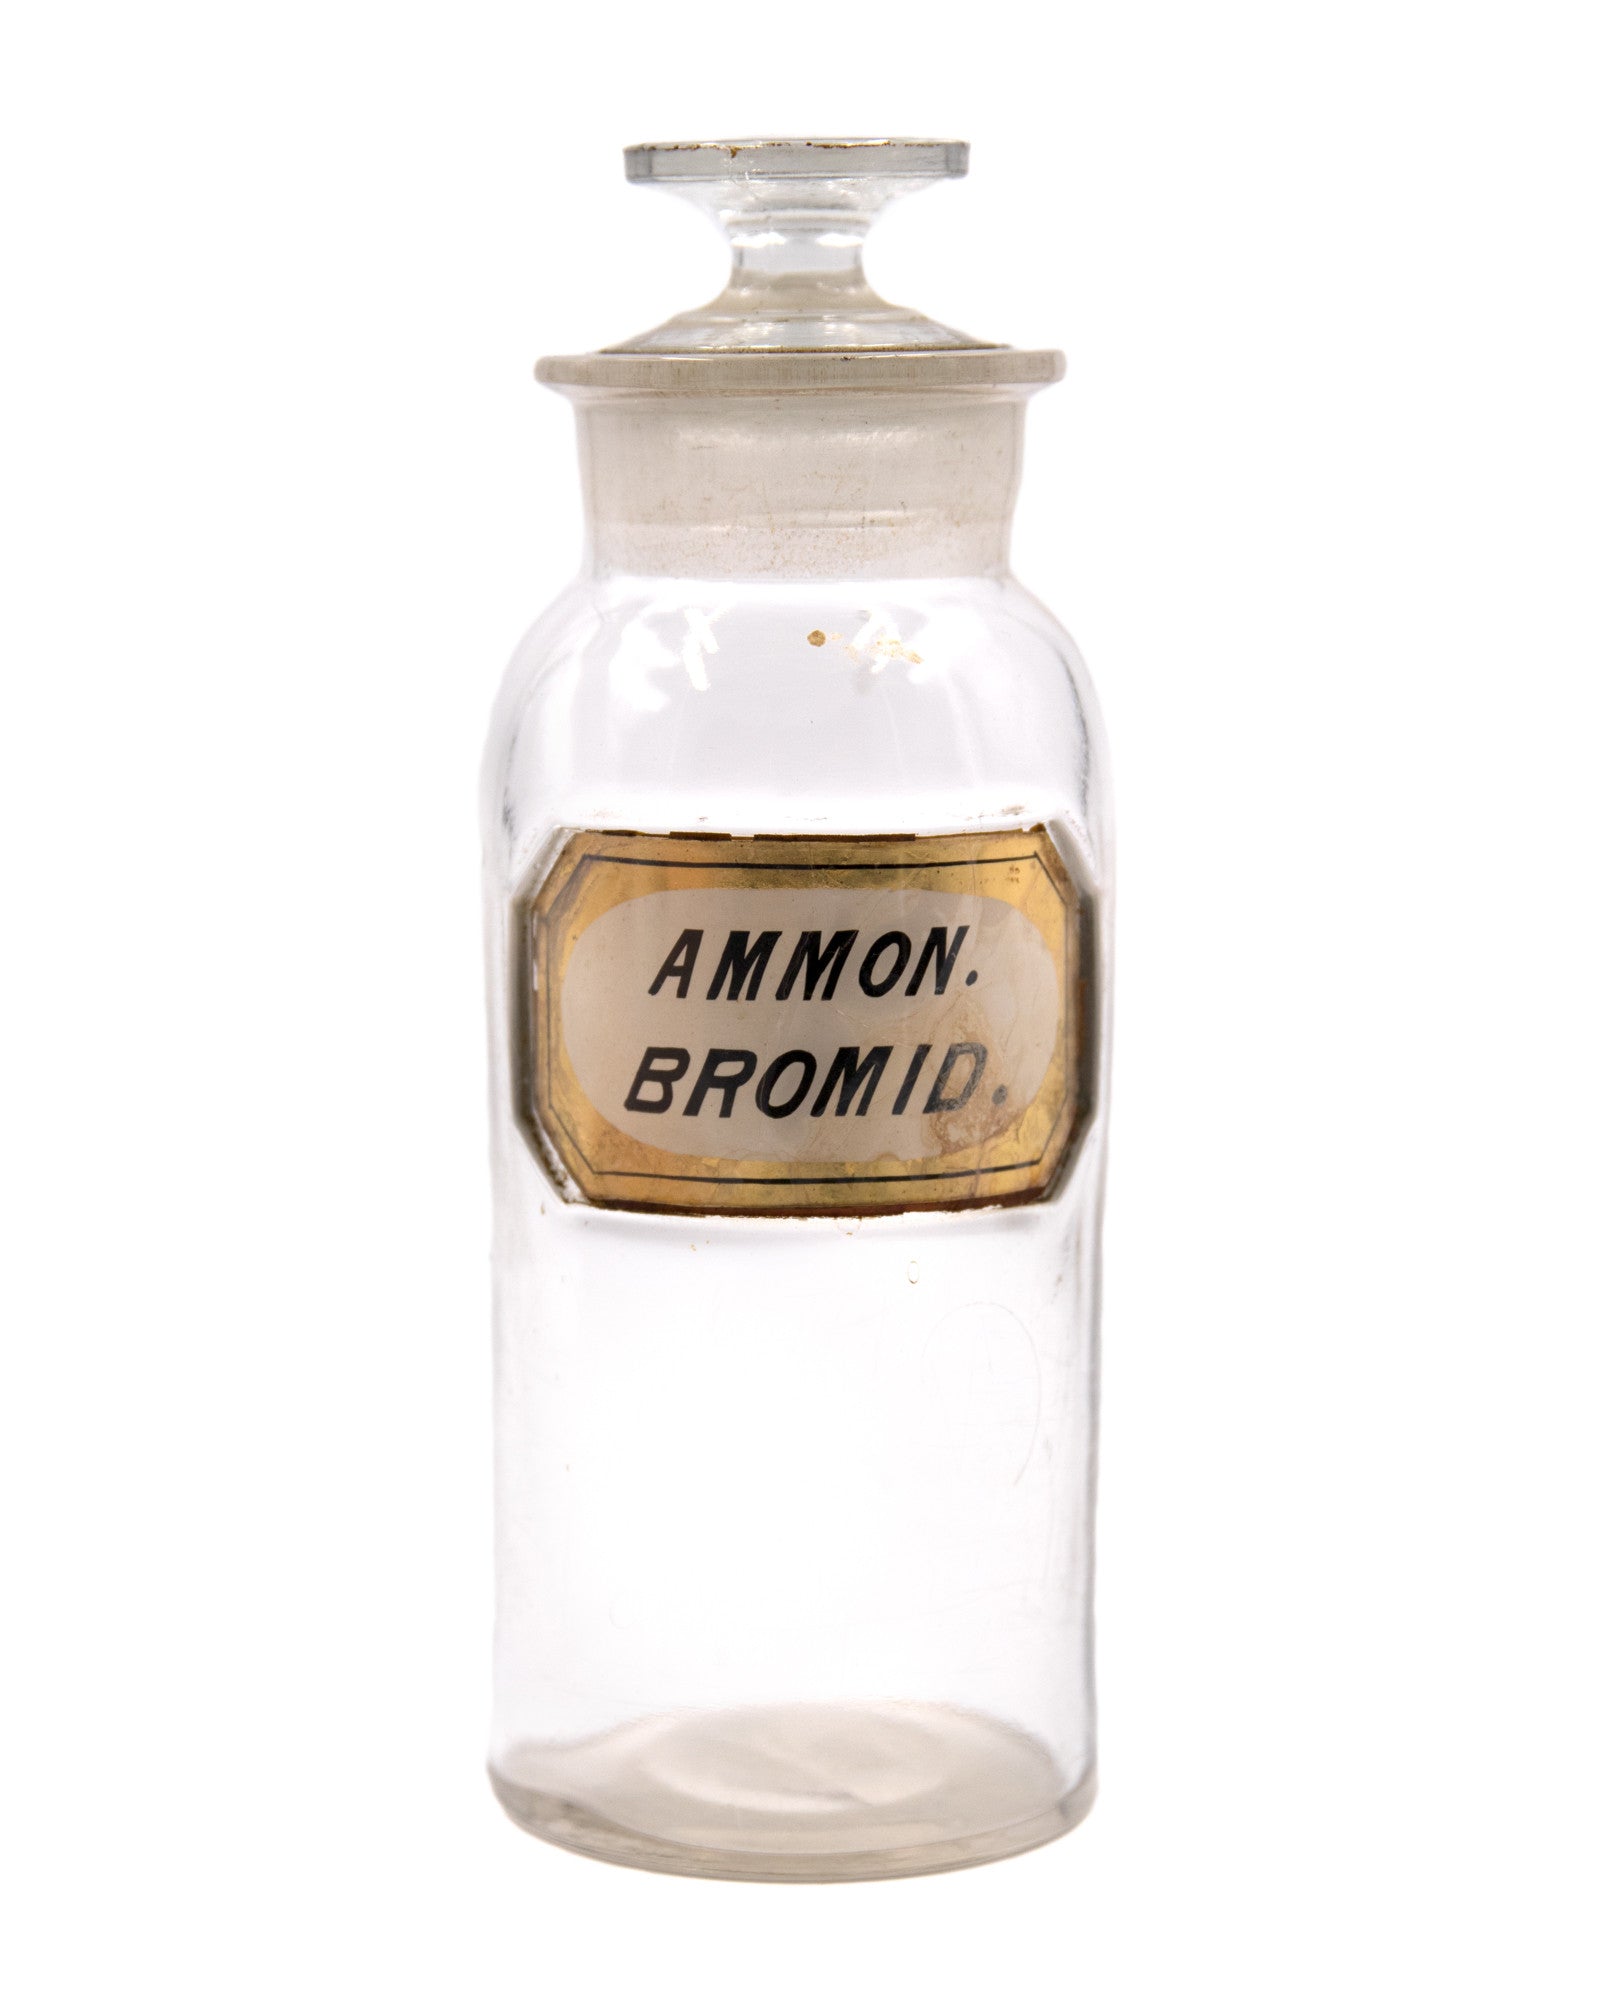 Apothecary Jar - Ammon.Bromid.